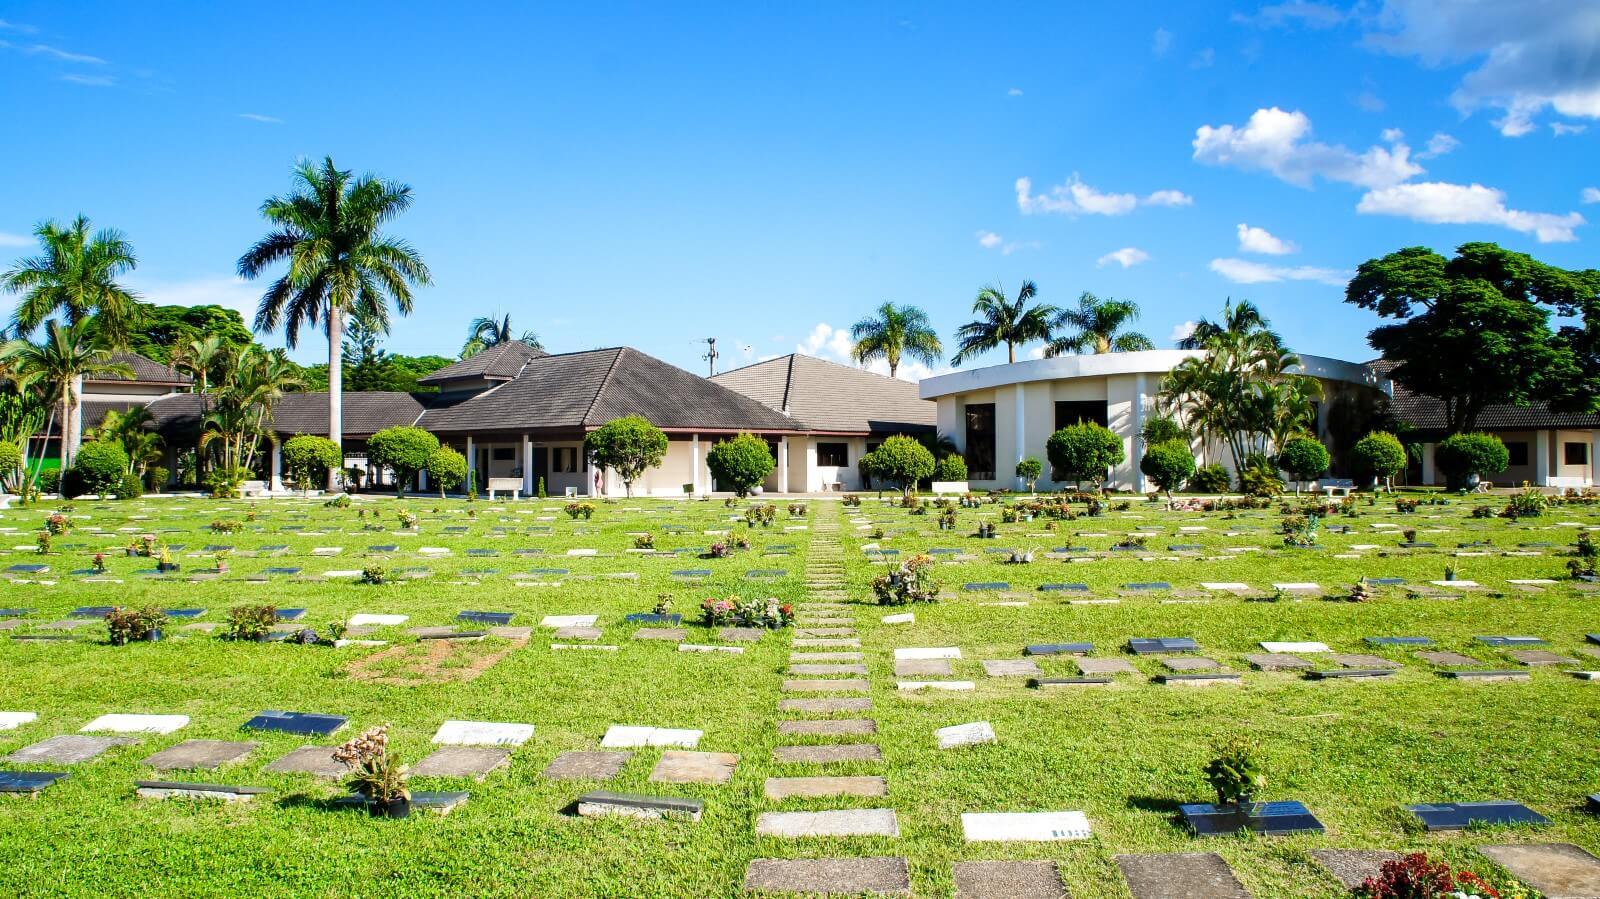 Área de jazigos do Parque das Flores crematório em São José dos Campos